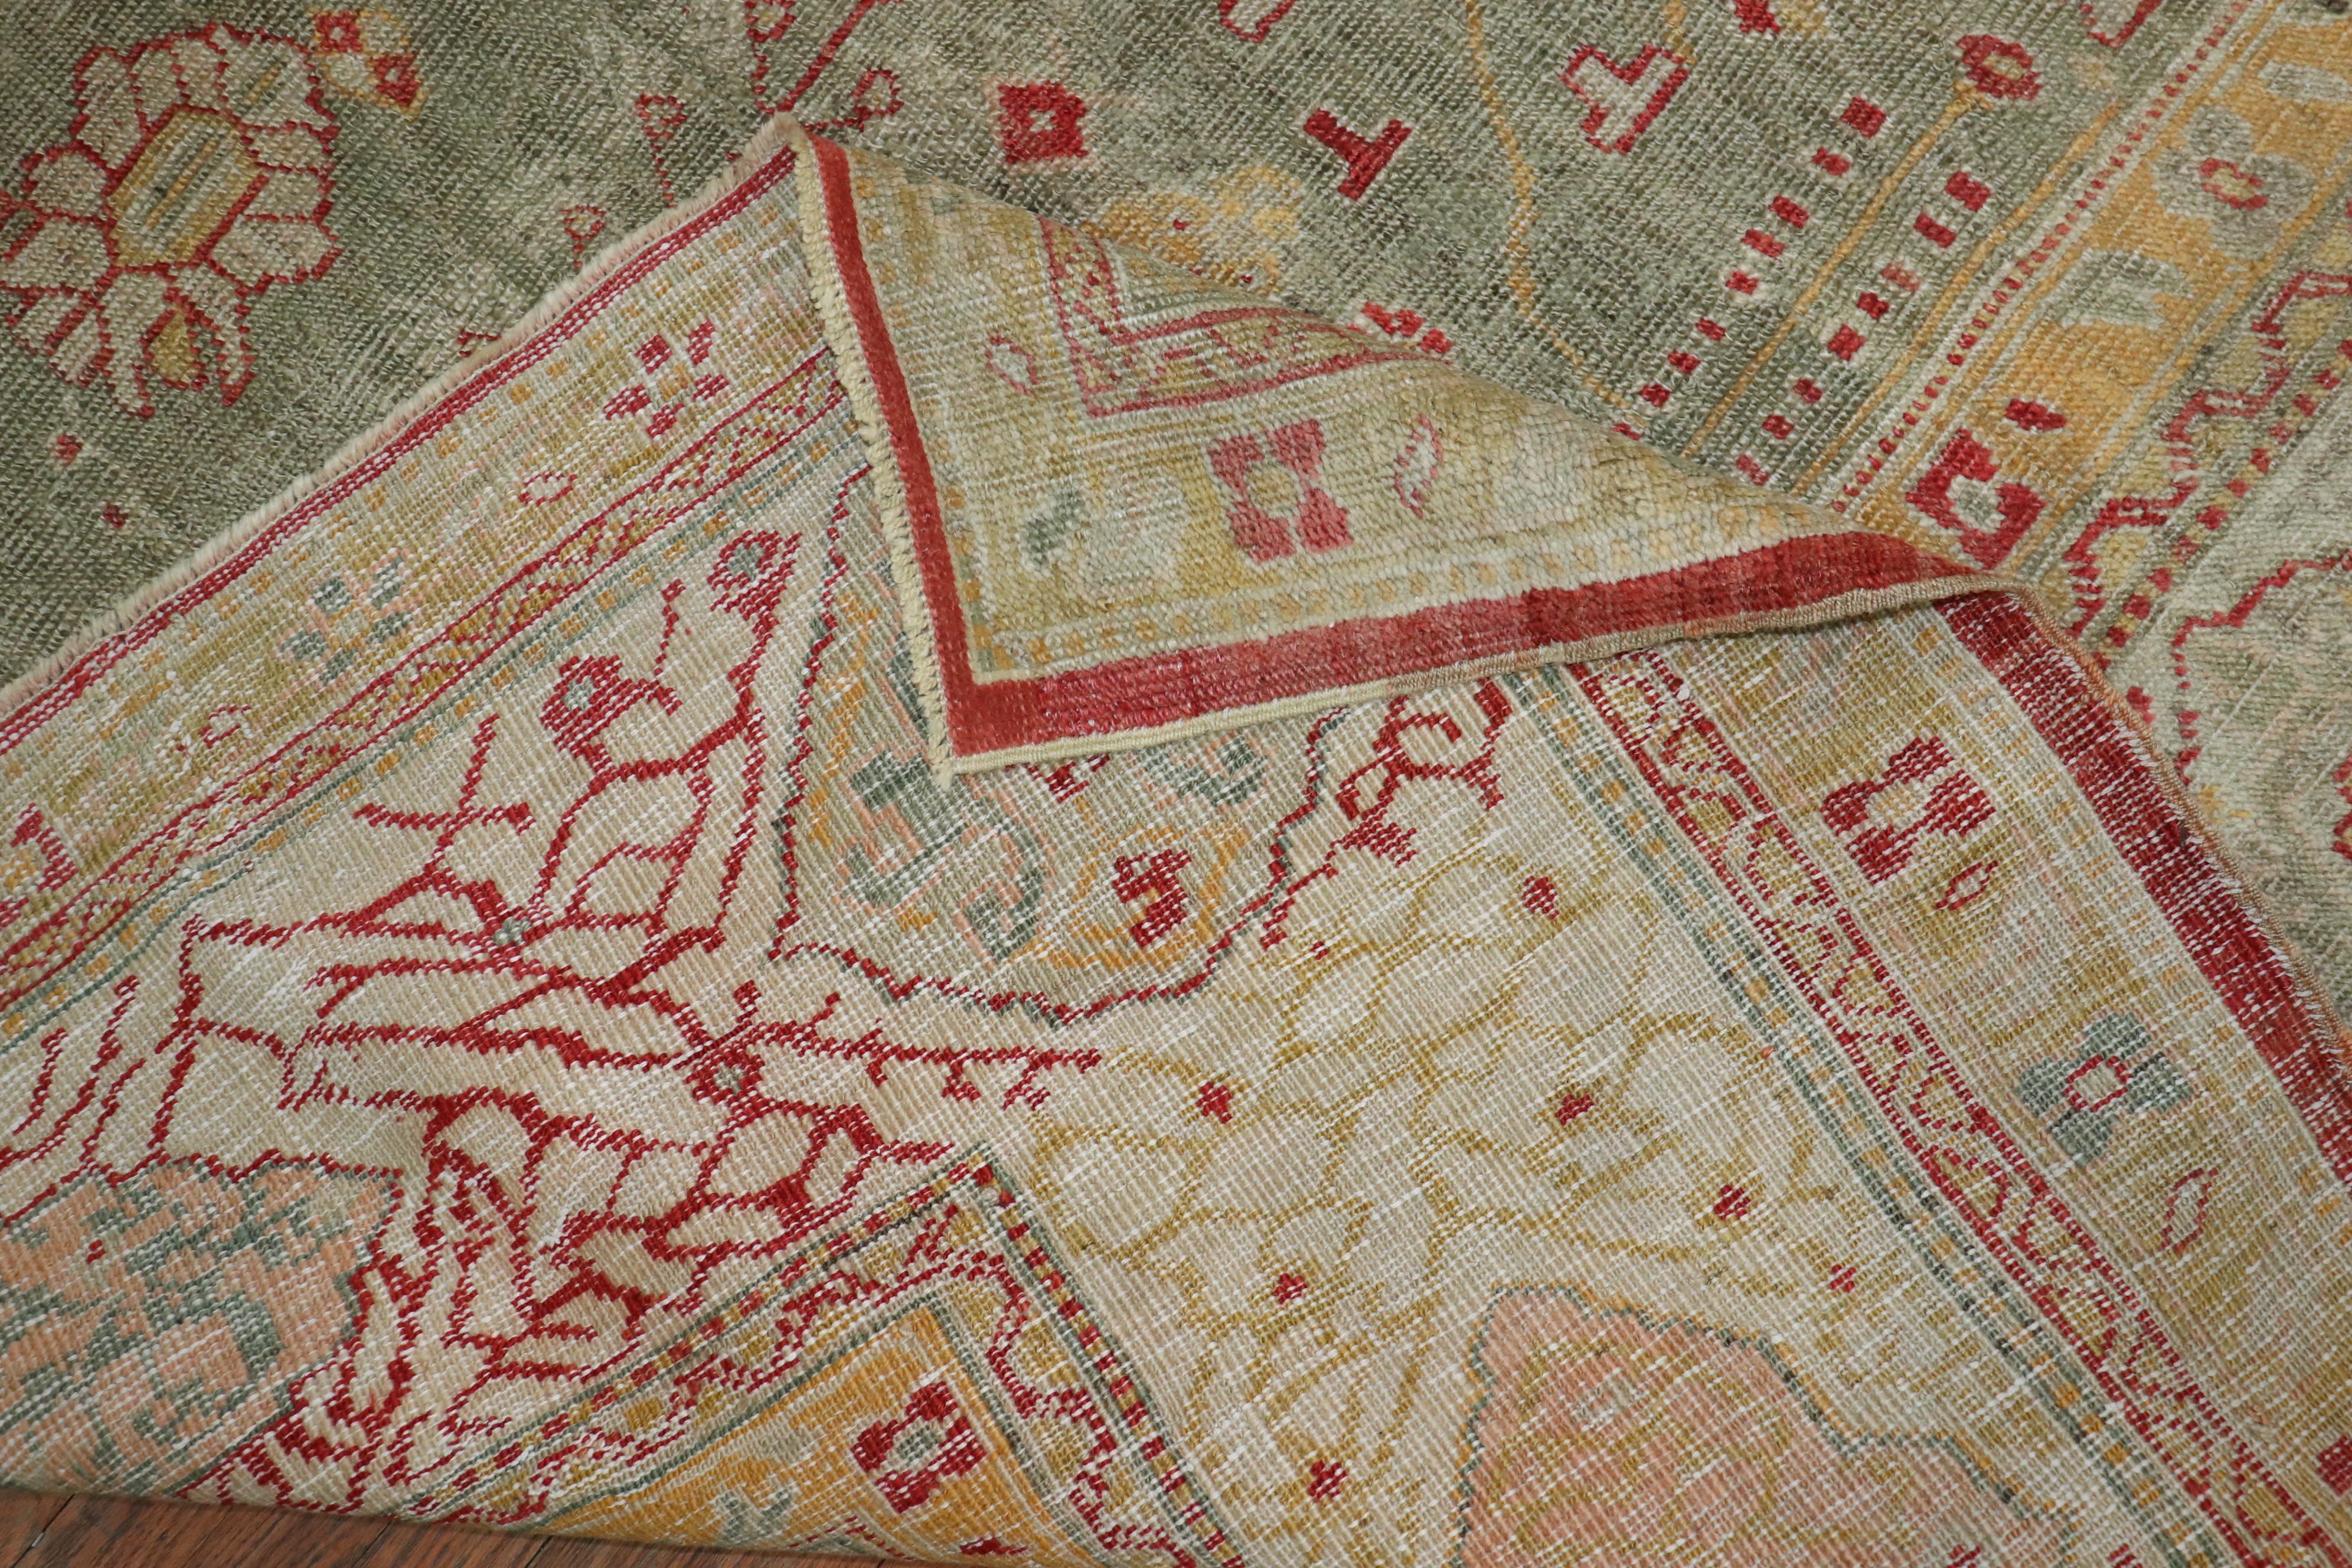 Authentique tapis turc Oushak ancien de la fin du XIXe siècle, fait à la main, avec un champ vert céladon, un médaillon central et une bordure ivoire. Des accents de jaune clair et de rouge orangé.

Mesures : 12'10